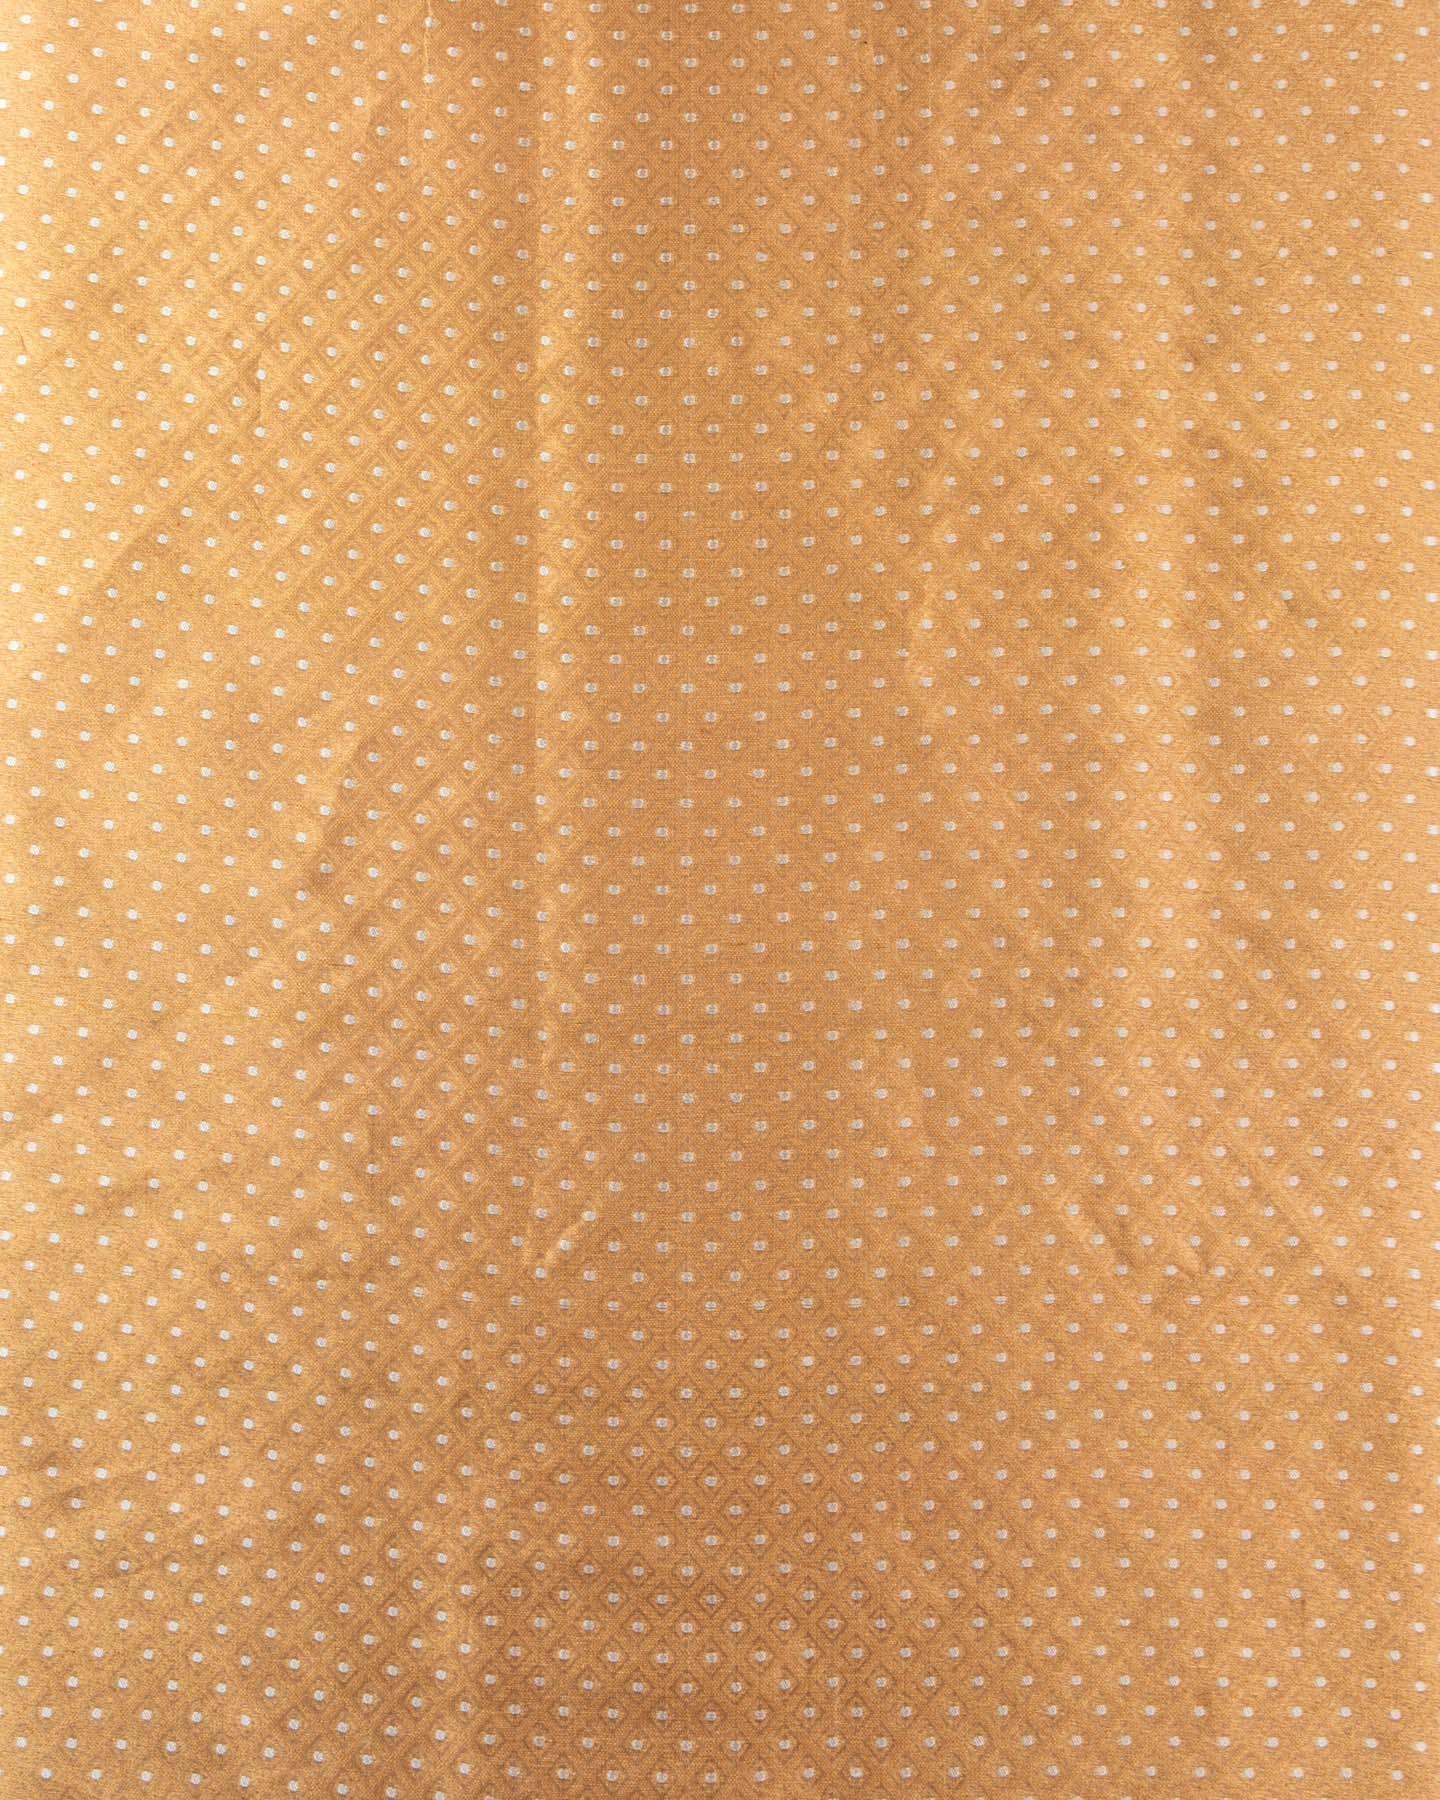 Gold Banarasi Cutwork Brocade Handwoven Kora Tissue Fabric - By HolyWeaves, Benares